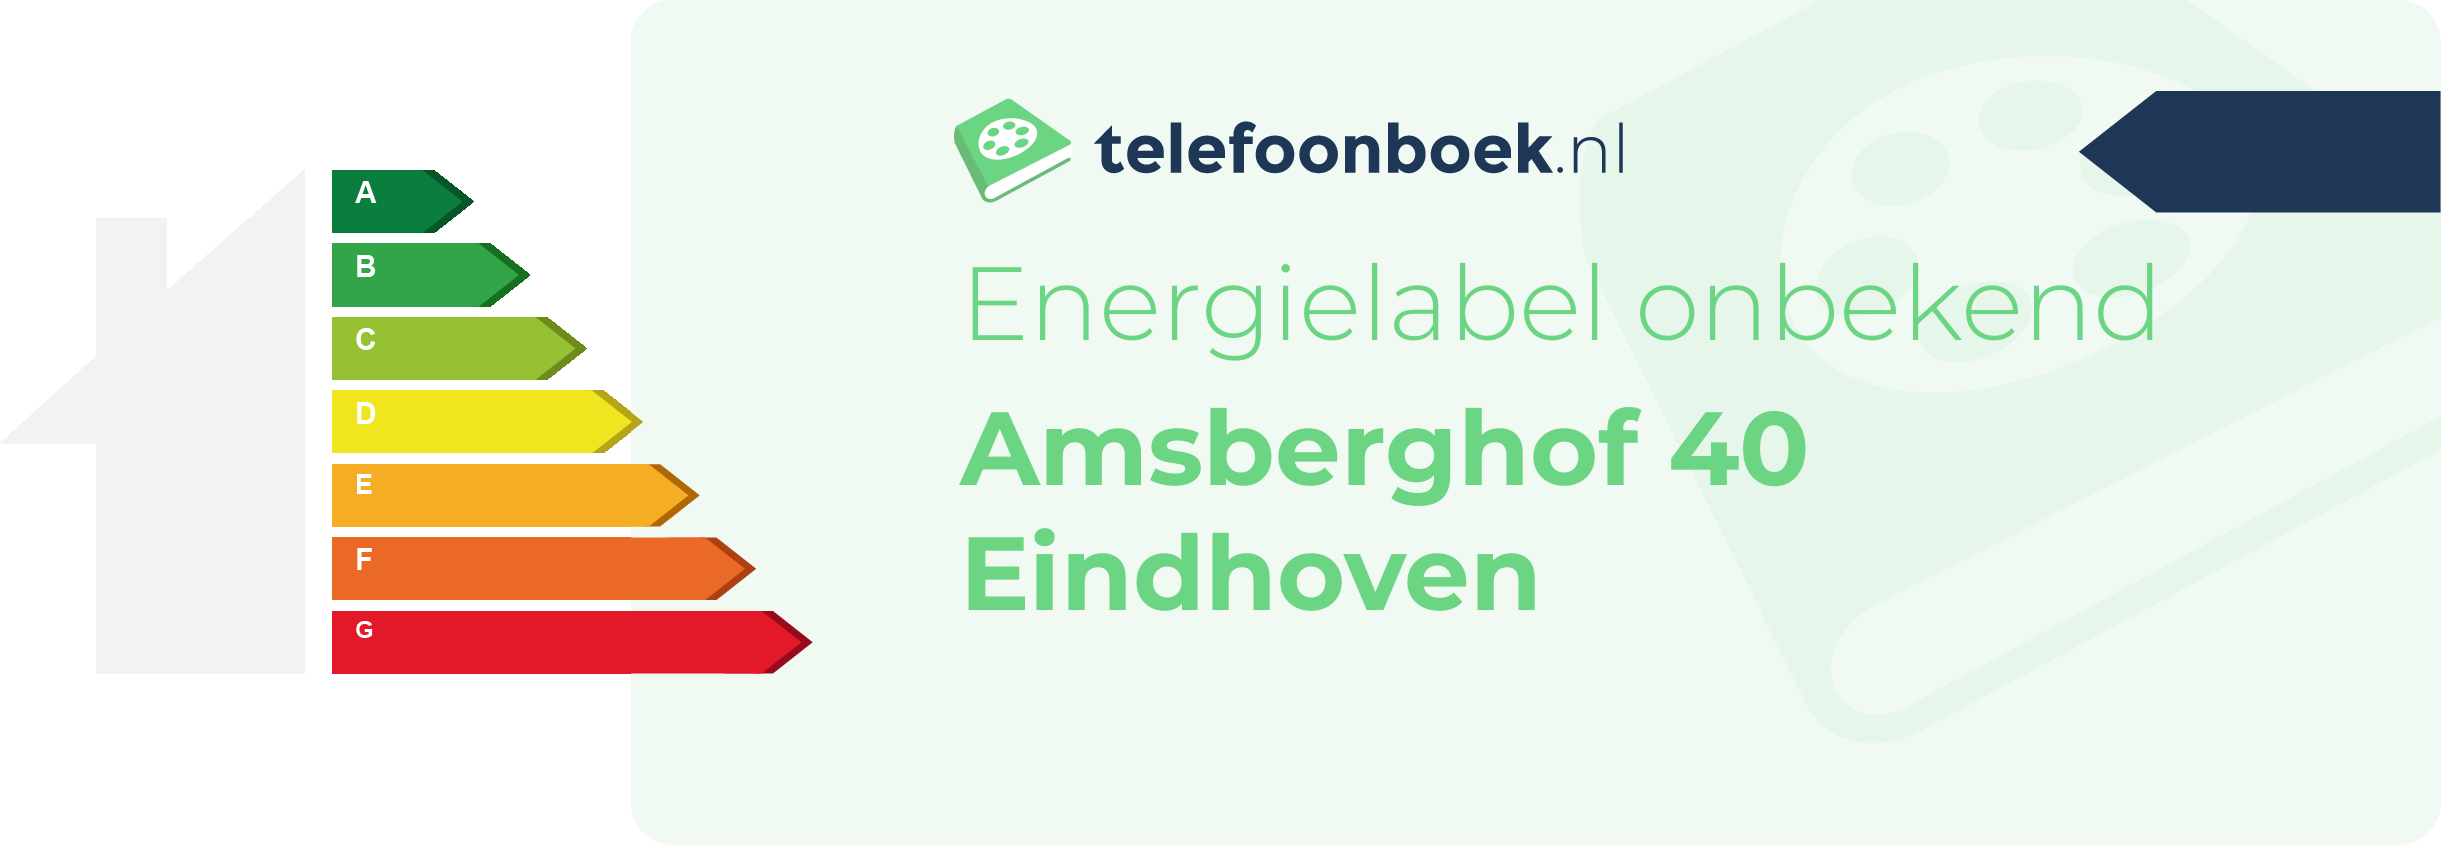 Energielabel Amsberghof 40 Eindhoven